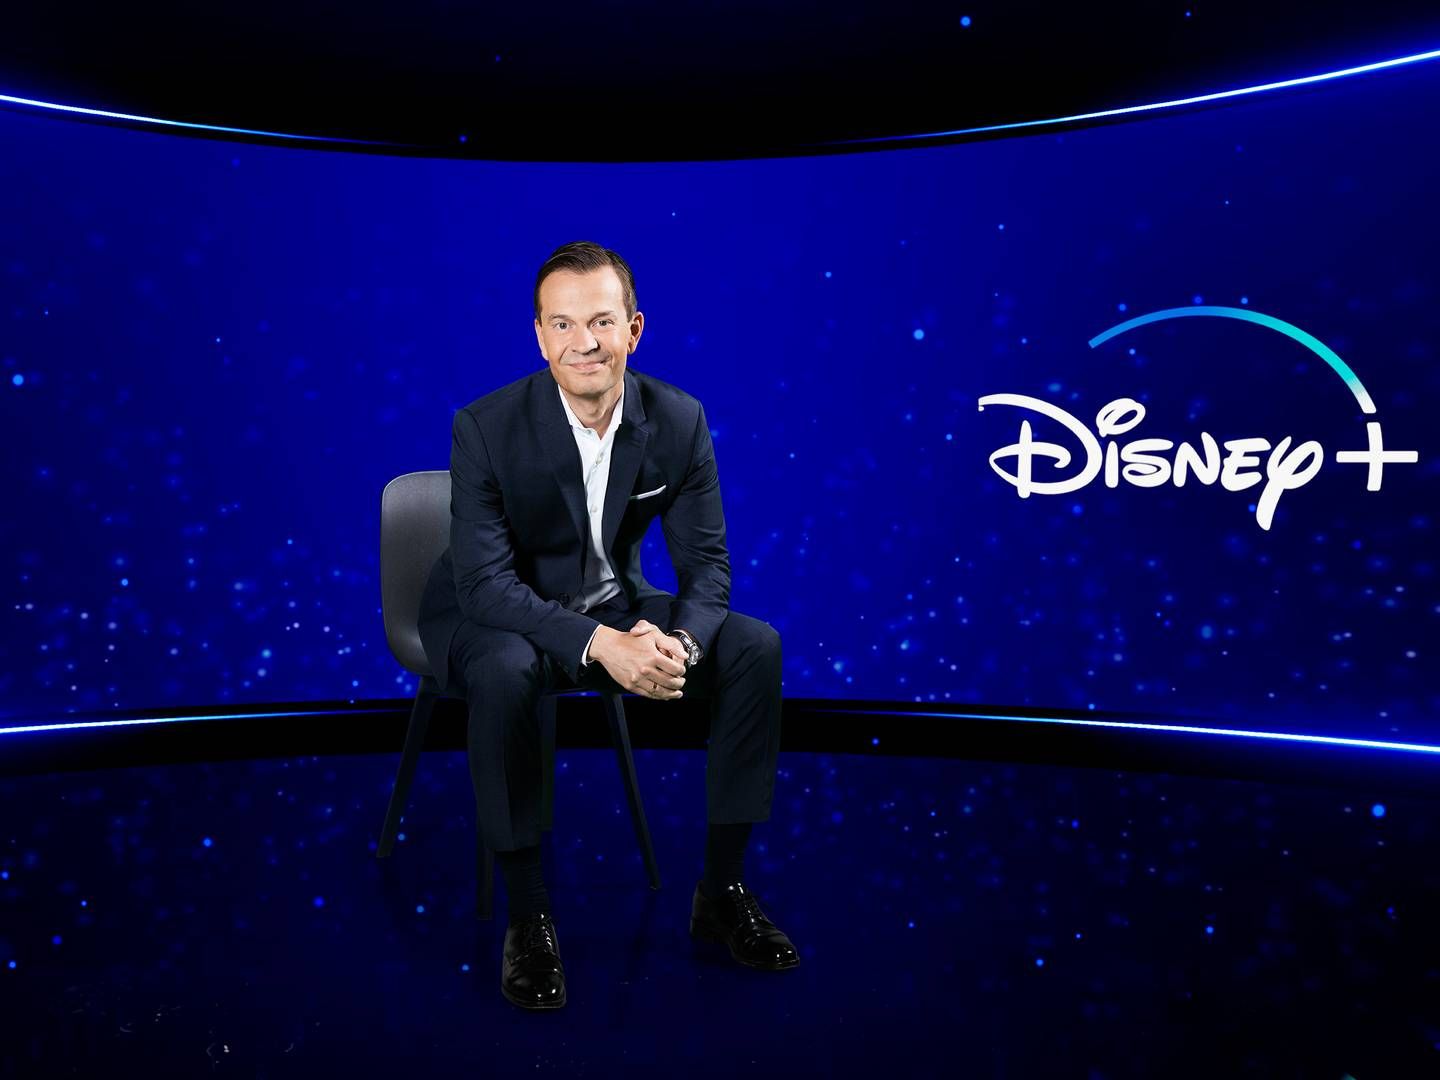 Hans van Rijn og Disney+ er ankommet til det danske annoncemarked. Det kan indvarsle en ny konkurrencesituation, der udvikler sig de kommende år, spår to mediebureauer. | Foto: PR/Walt Disney Company